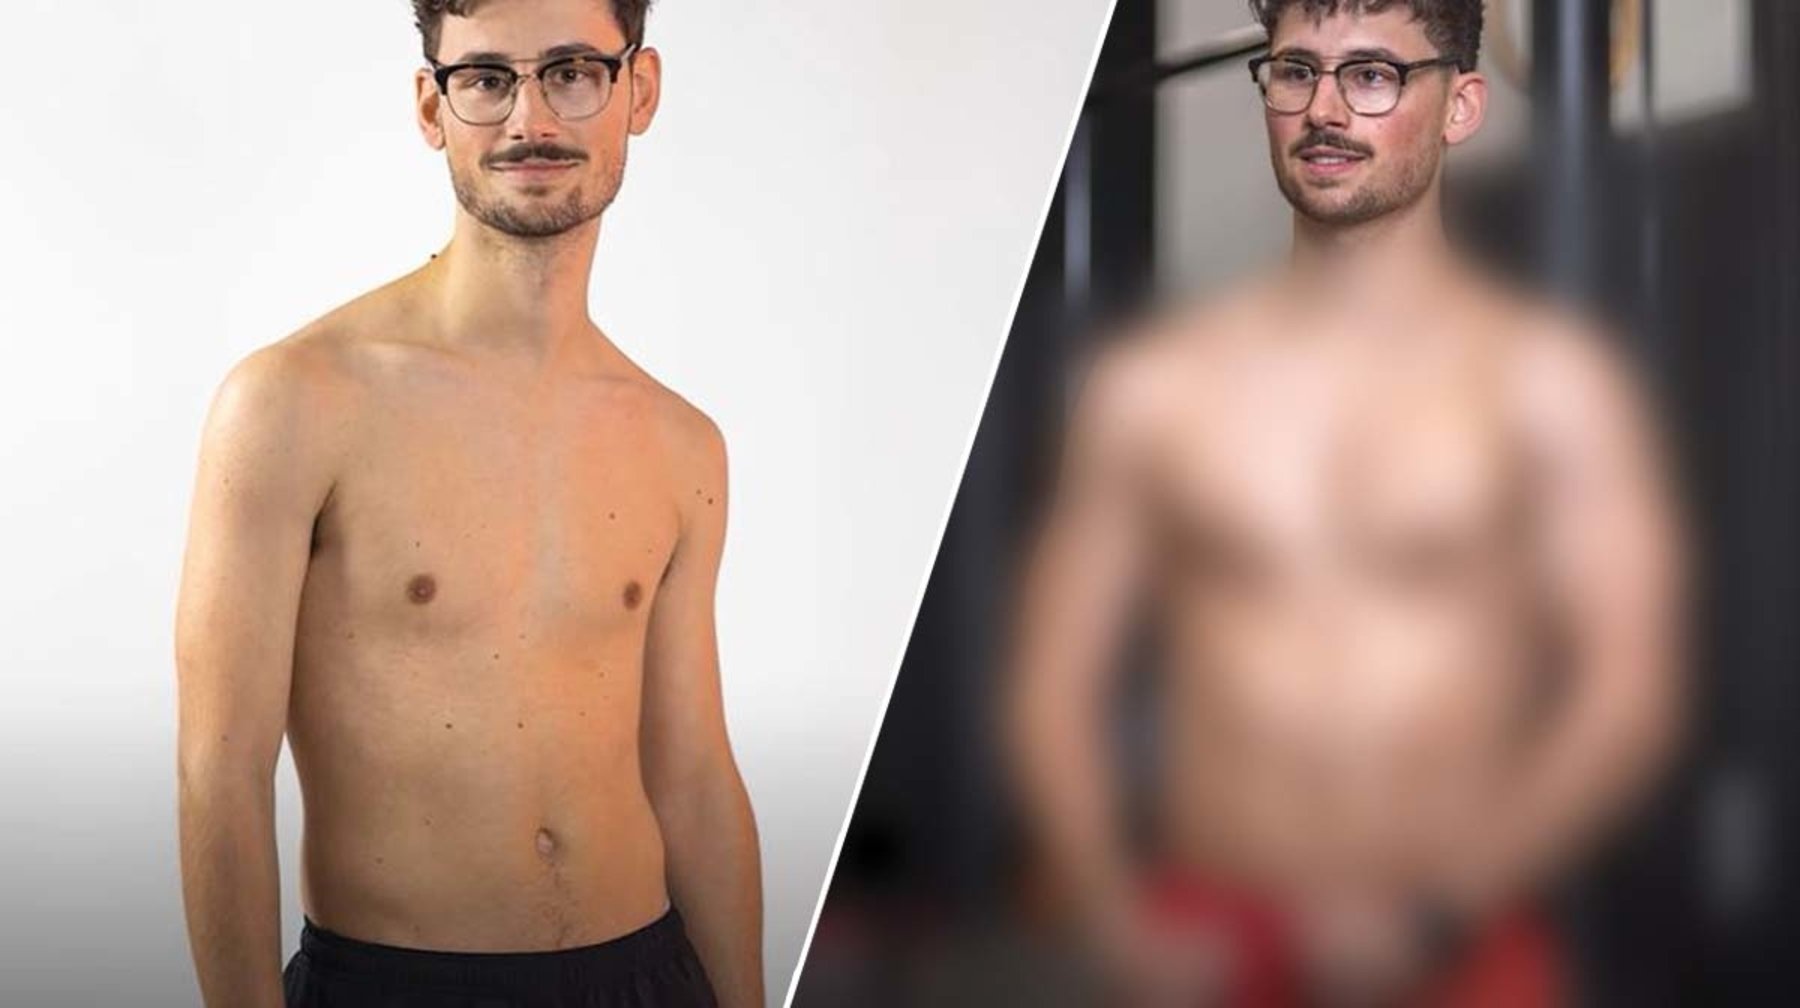 Cameraman ondergaat transformatie van 90 dagen en voegt 7 kg spiermassa toe